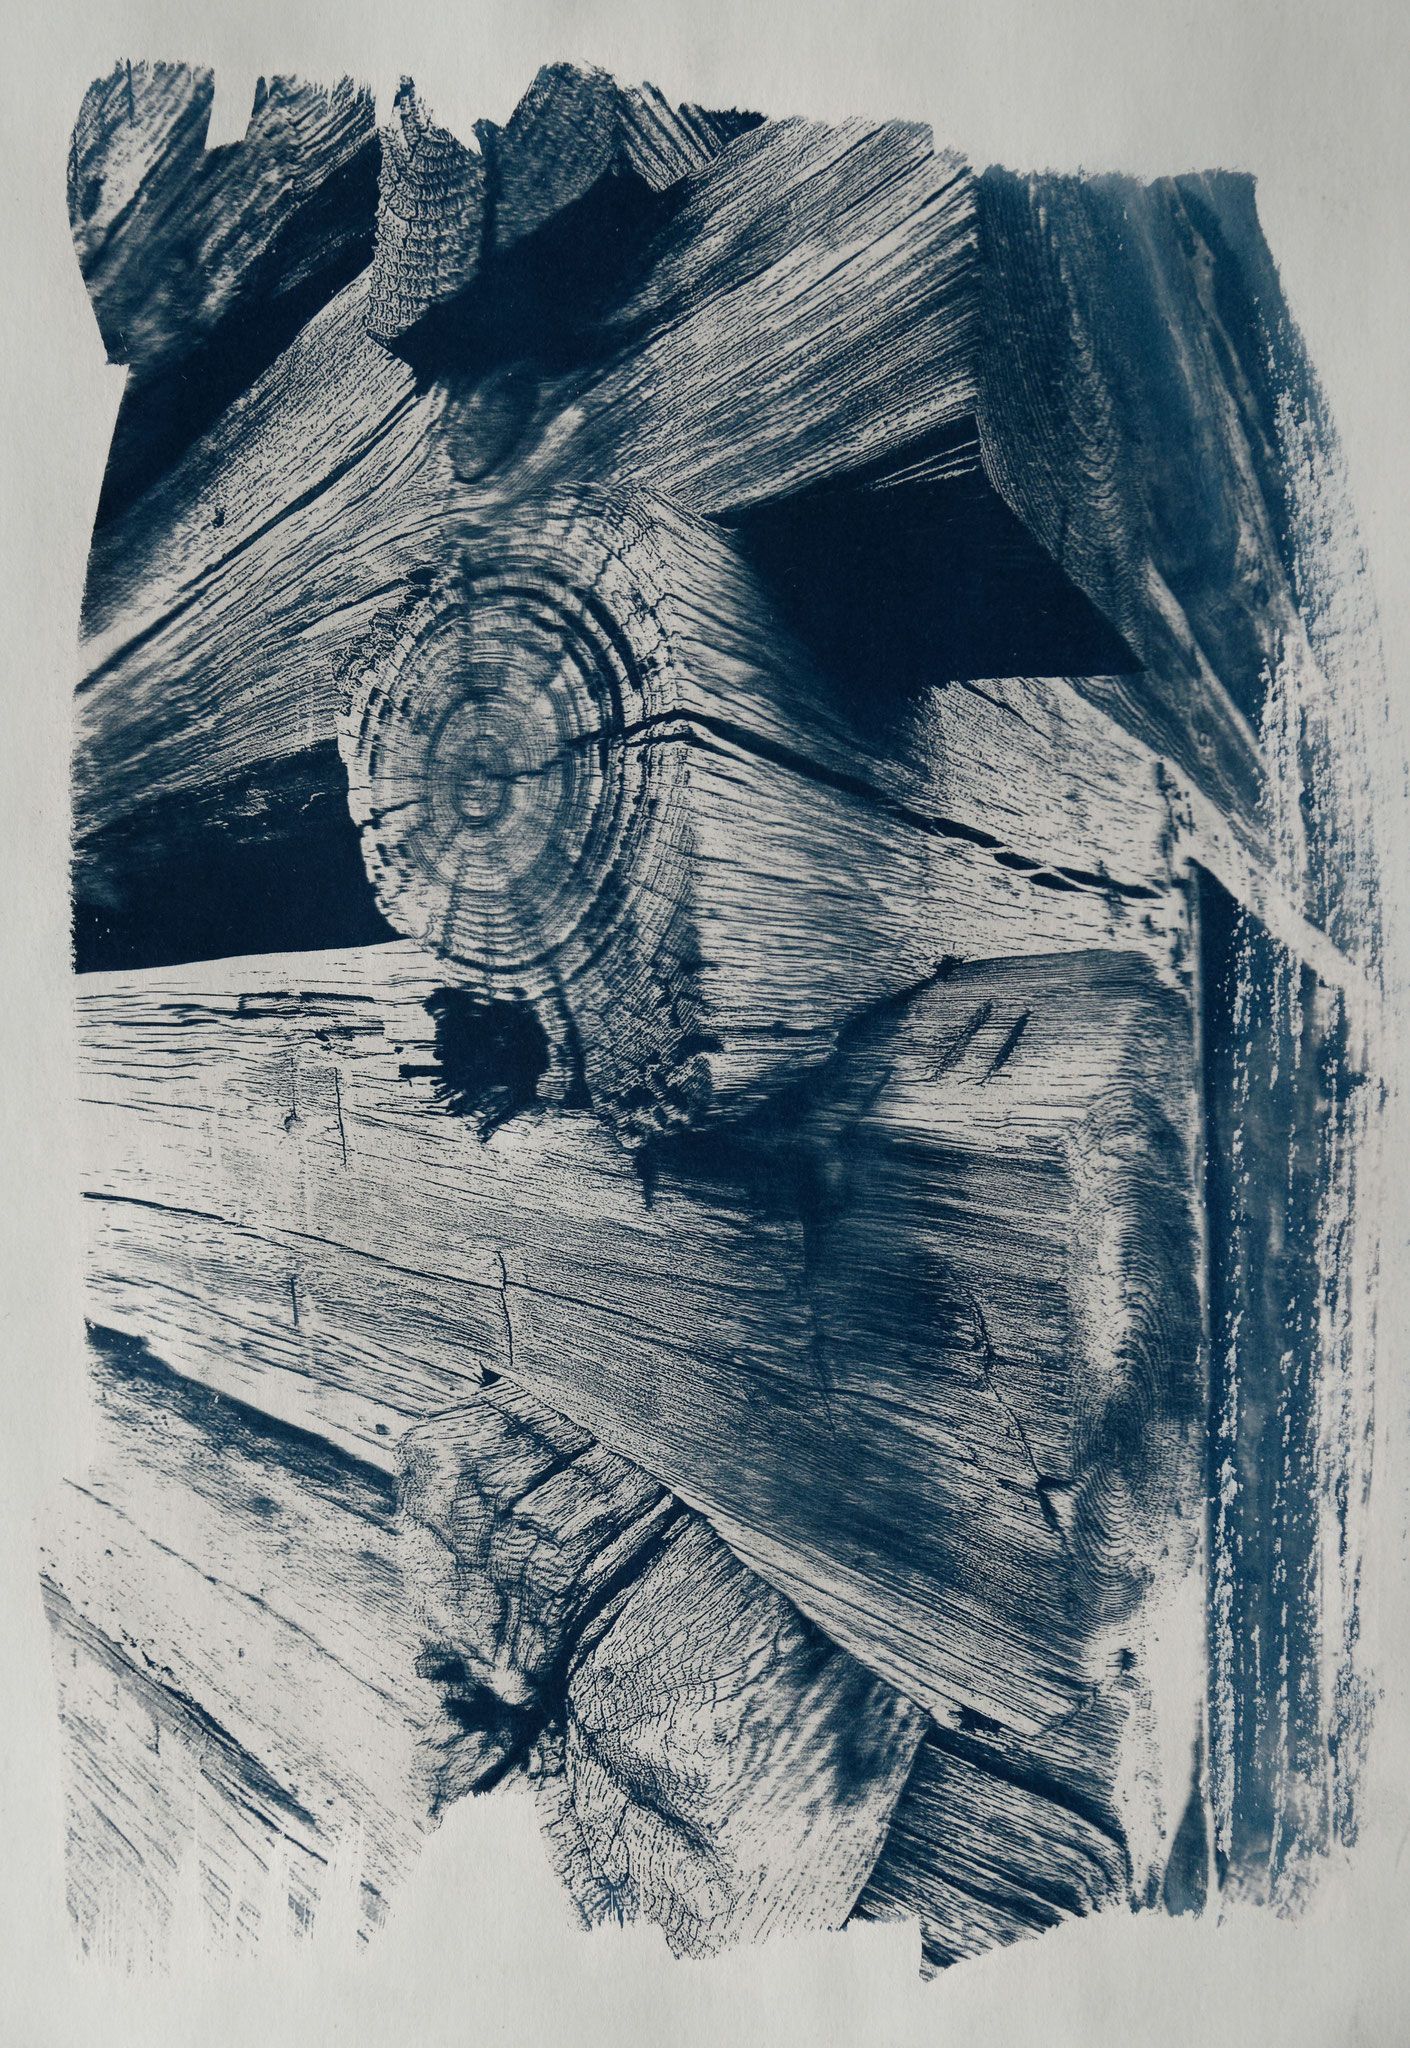 Cabin in the woods, Cyanotypie auf Papier, 29x42 cm, 2022